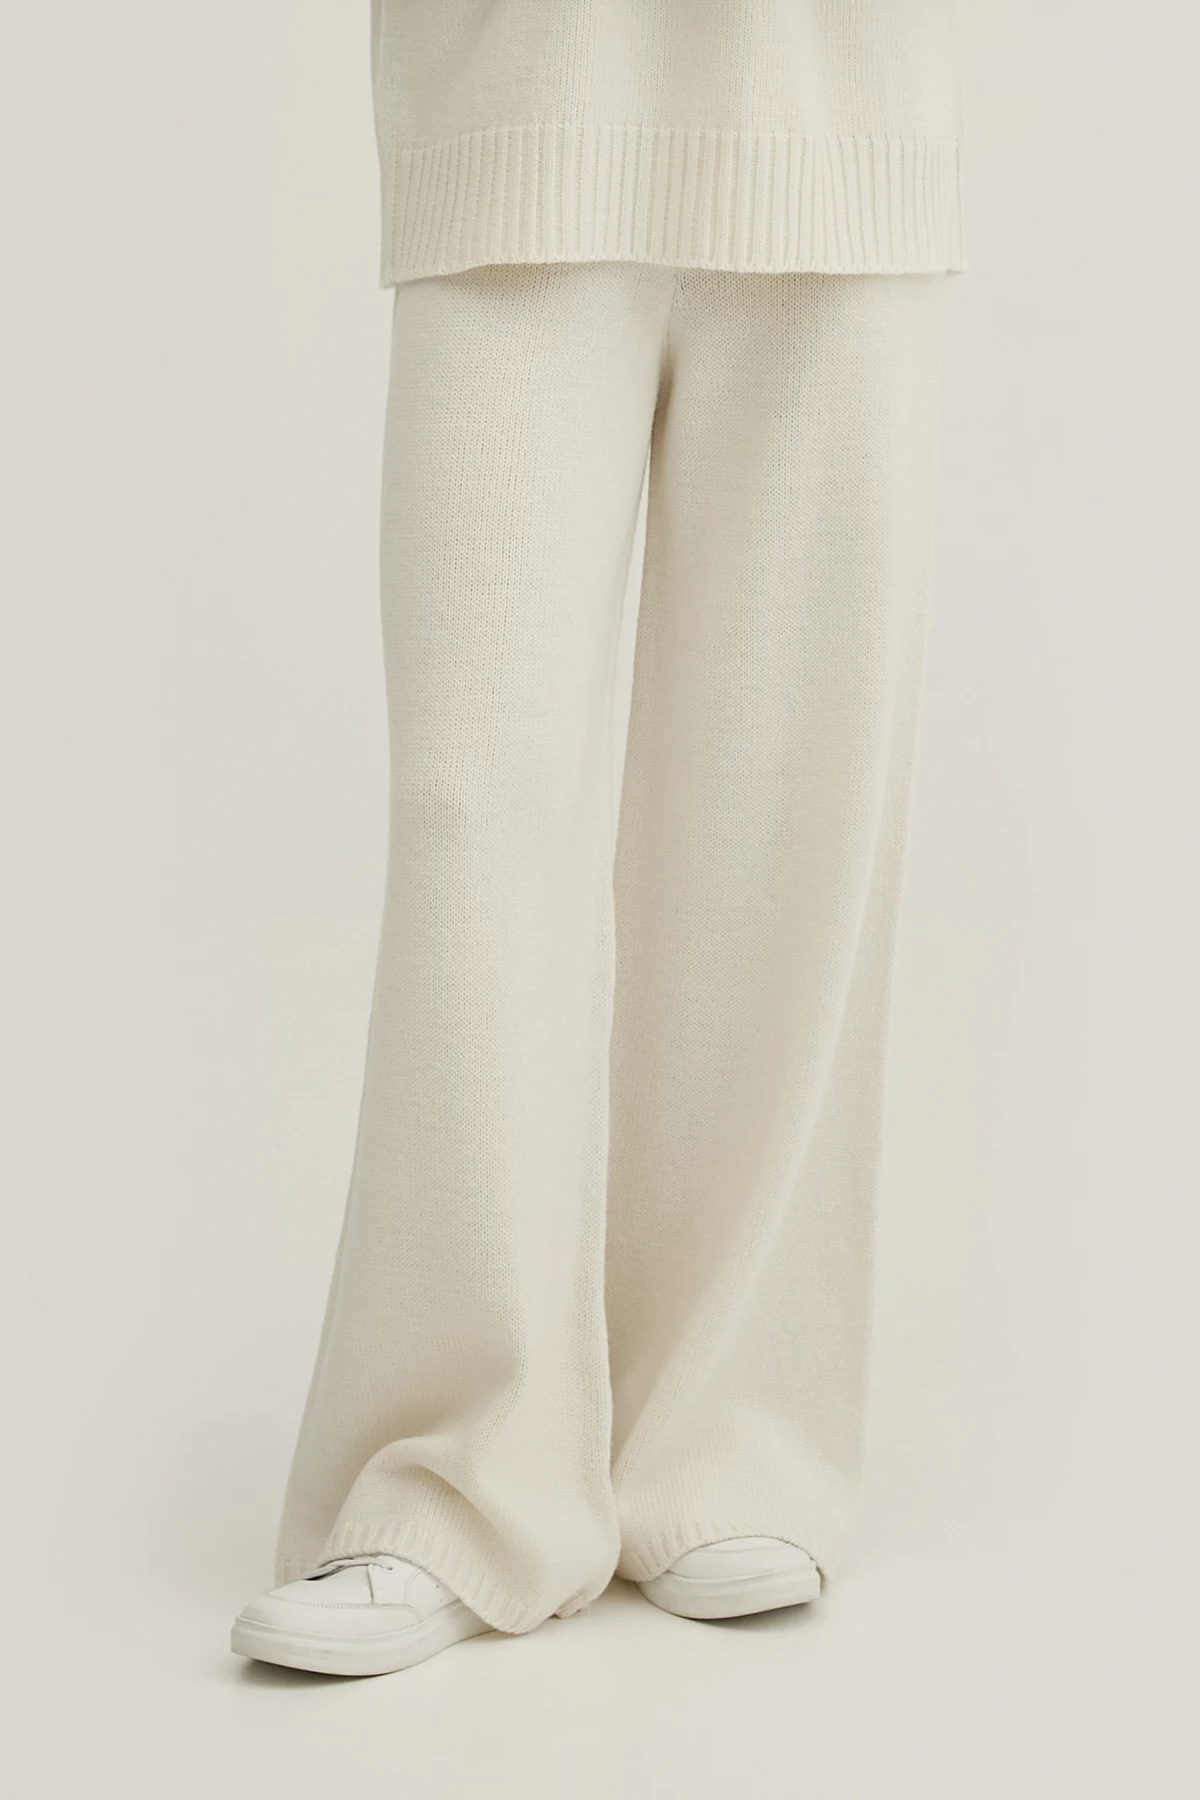 В’язані вкорочені штани з вовни мериноса молочного кольору, фото 2